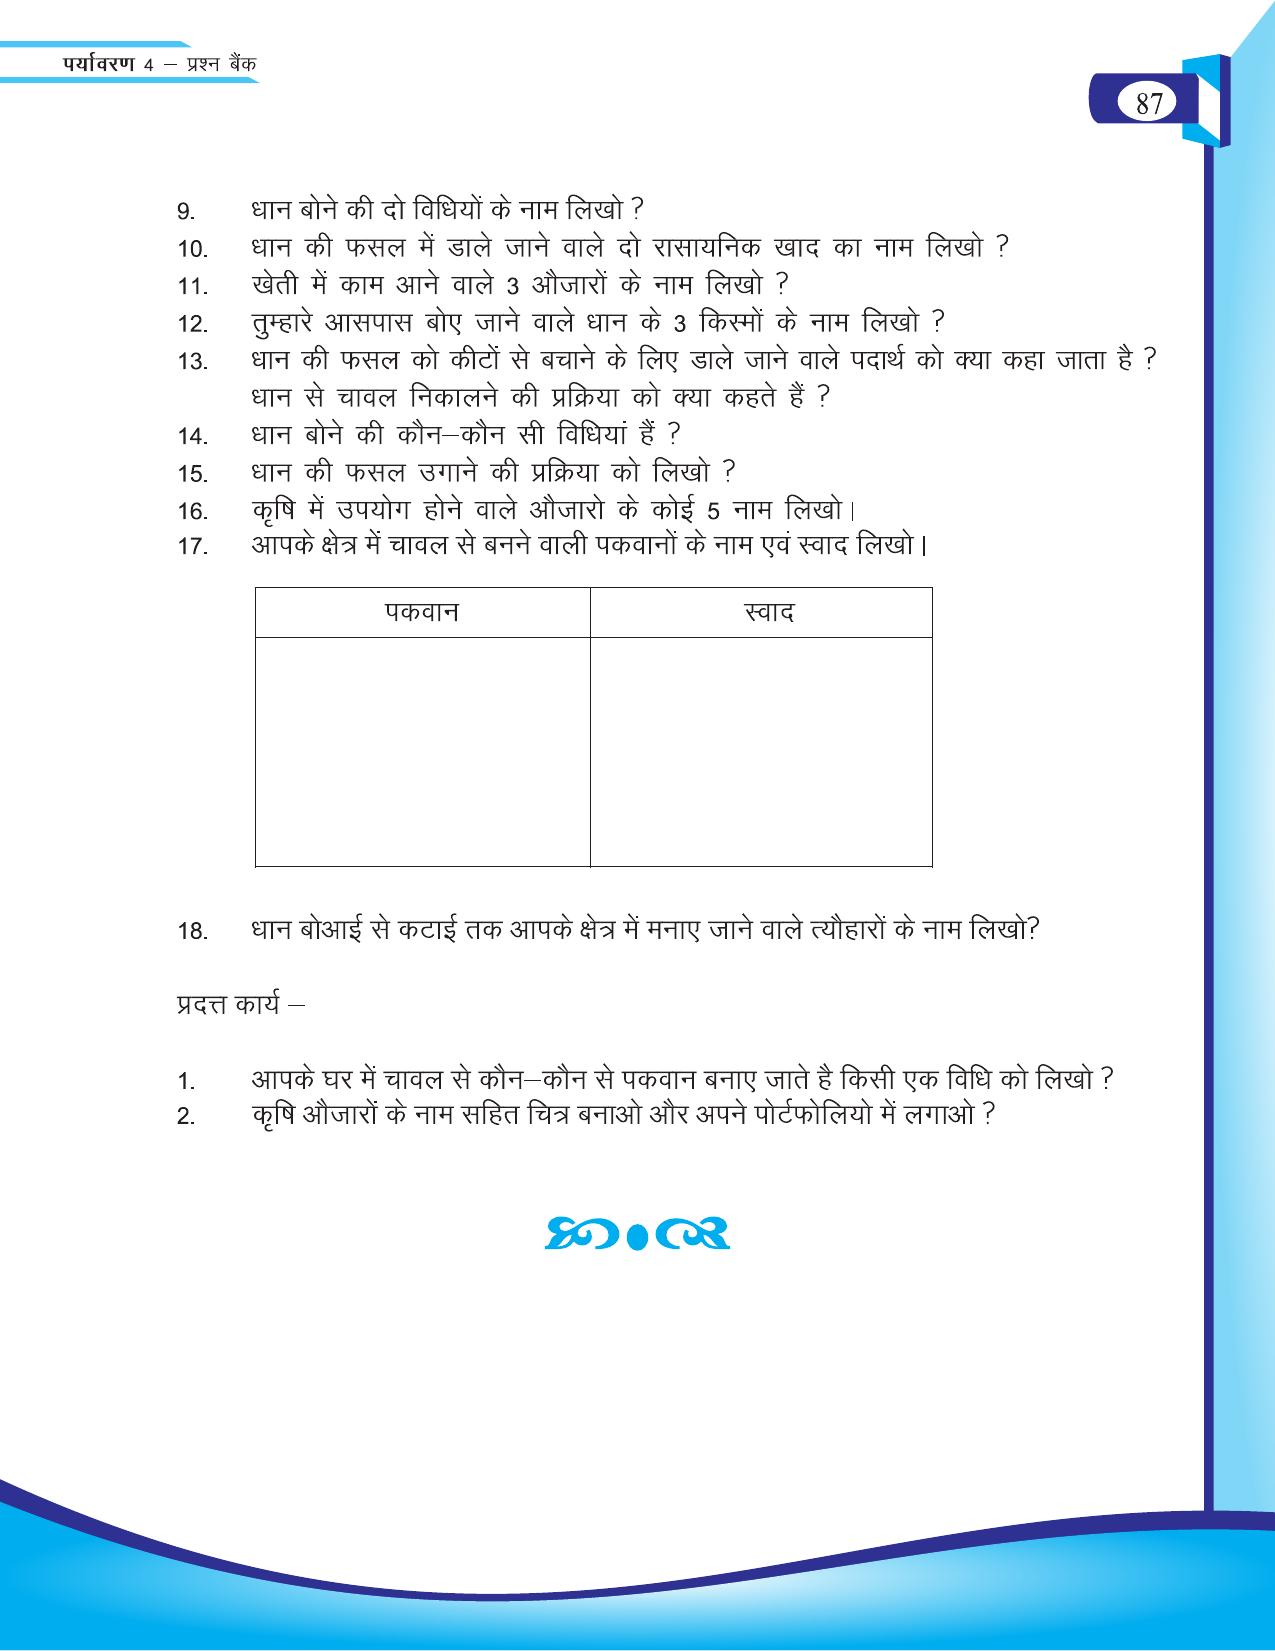 Chhattisgarh Board Class 4 EVS Question Bank 2015-16 - Page 16